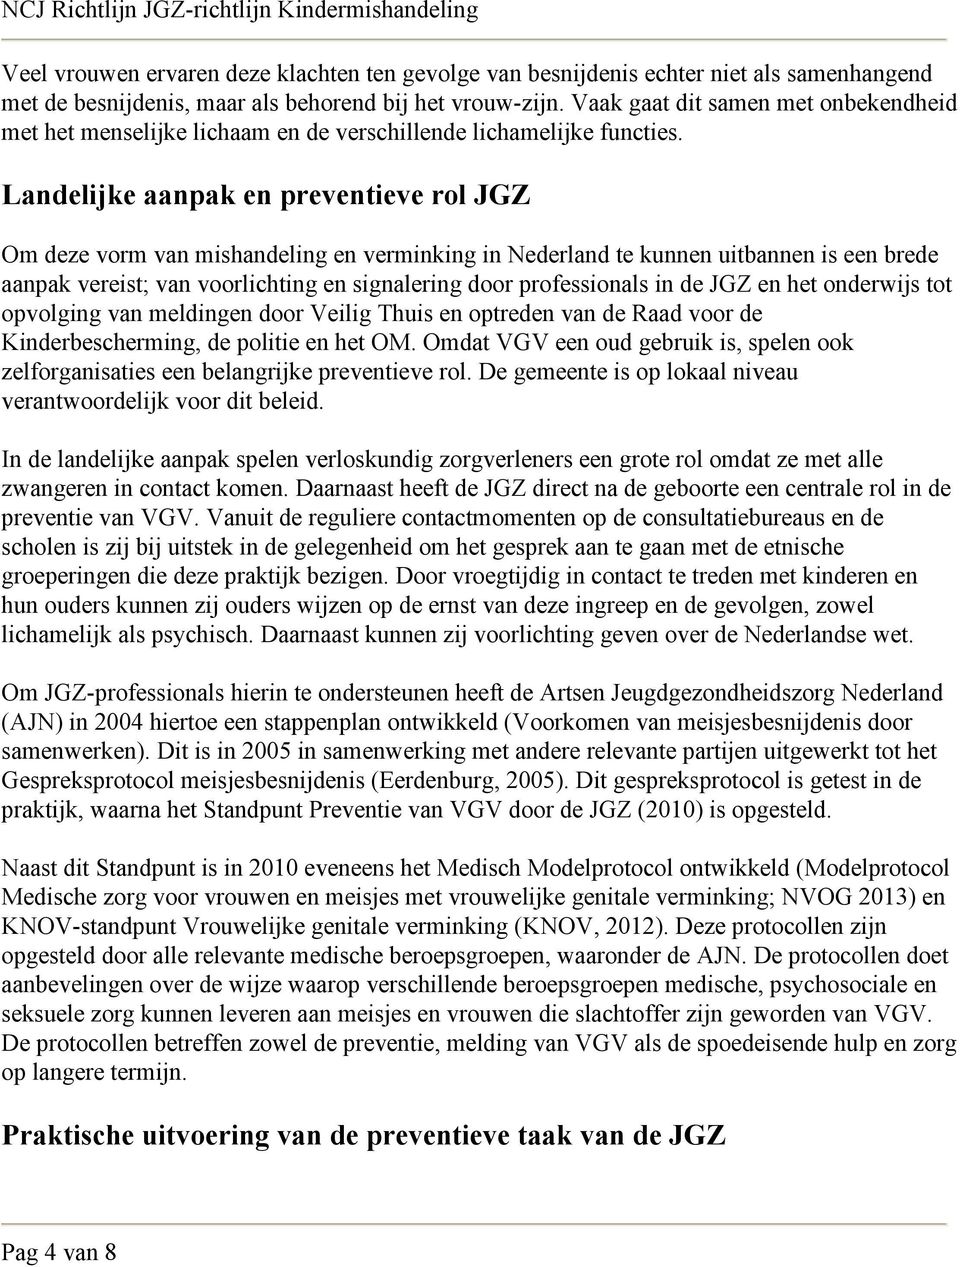 Landelijke aanpak en preventieve rol JGZ Om deze vorm van mishandeling en verminking in Nederland te kunnen uitbannen is een brede aanpak vereist; van voorlichting en signalering door professionals